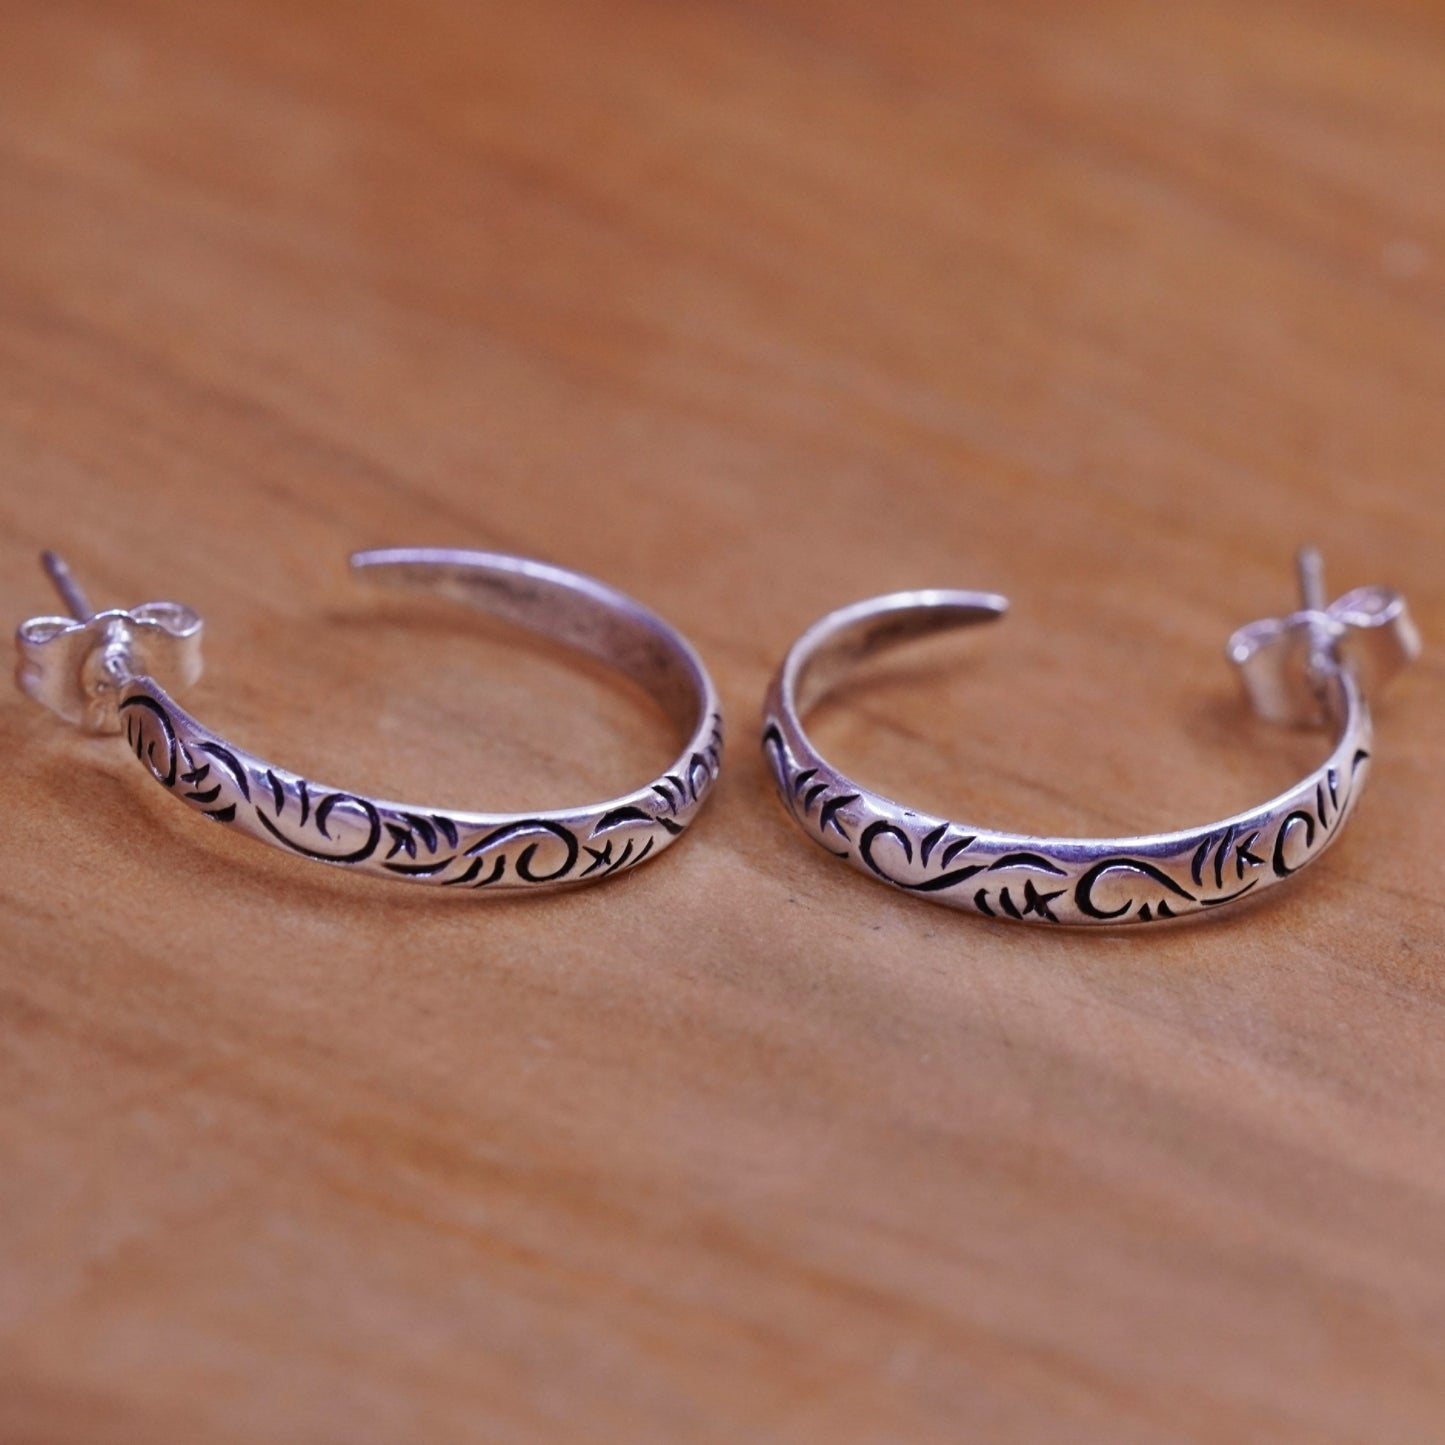 0.75”, Sterling silver handmade hoop earrings, textured 925 huggie studs